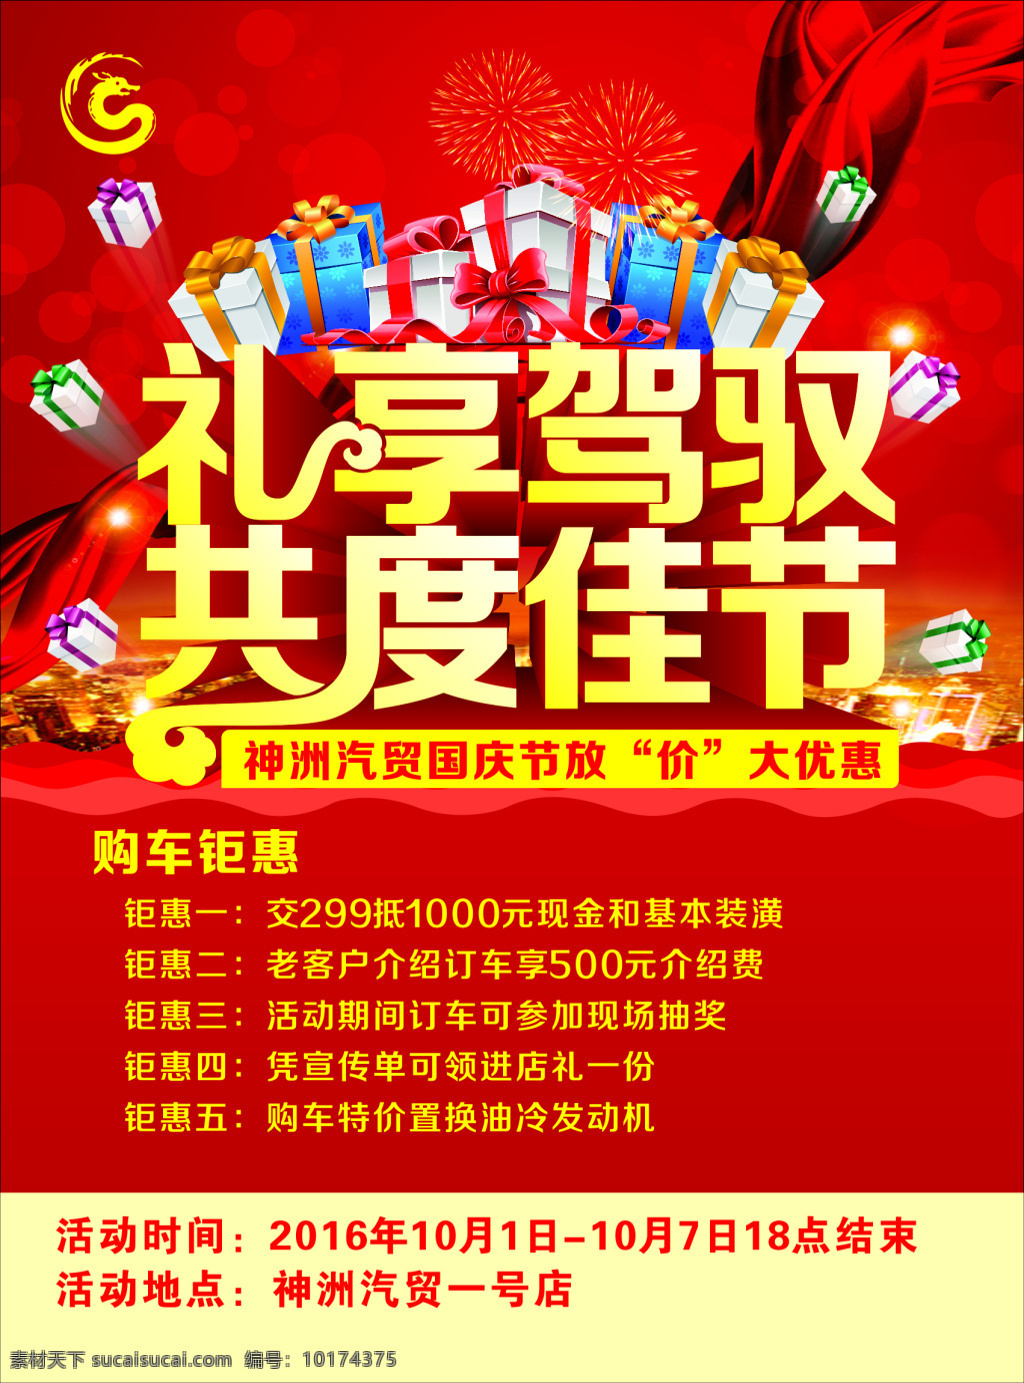 共庆 佳节 宣传页 国庆 海报 宣传单 汽贸 红色背景 礼品